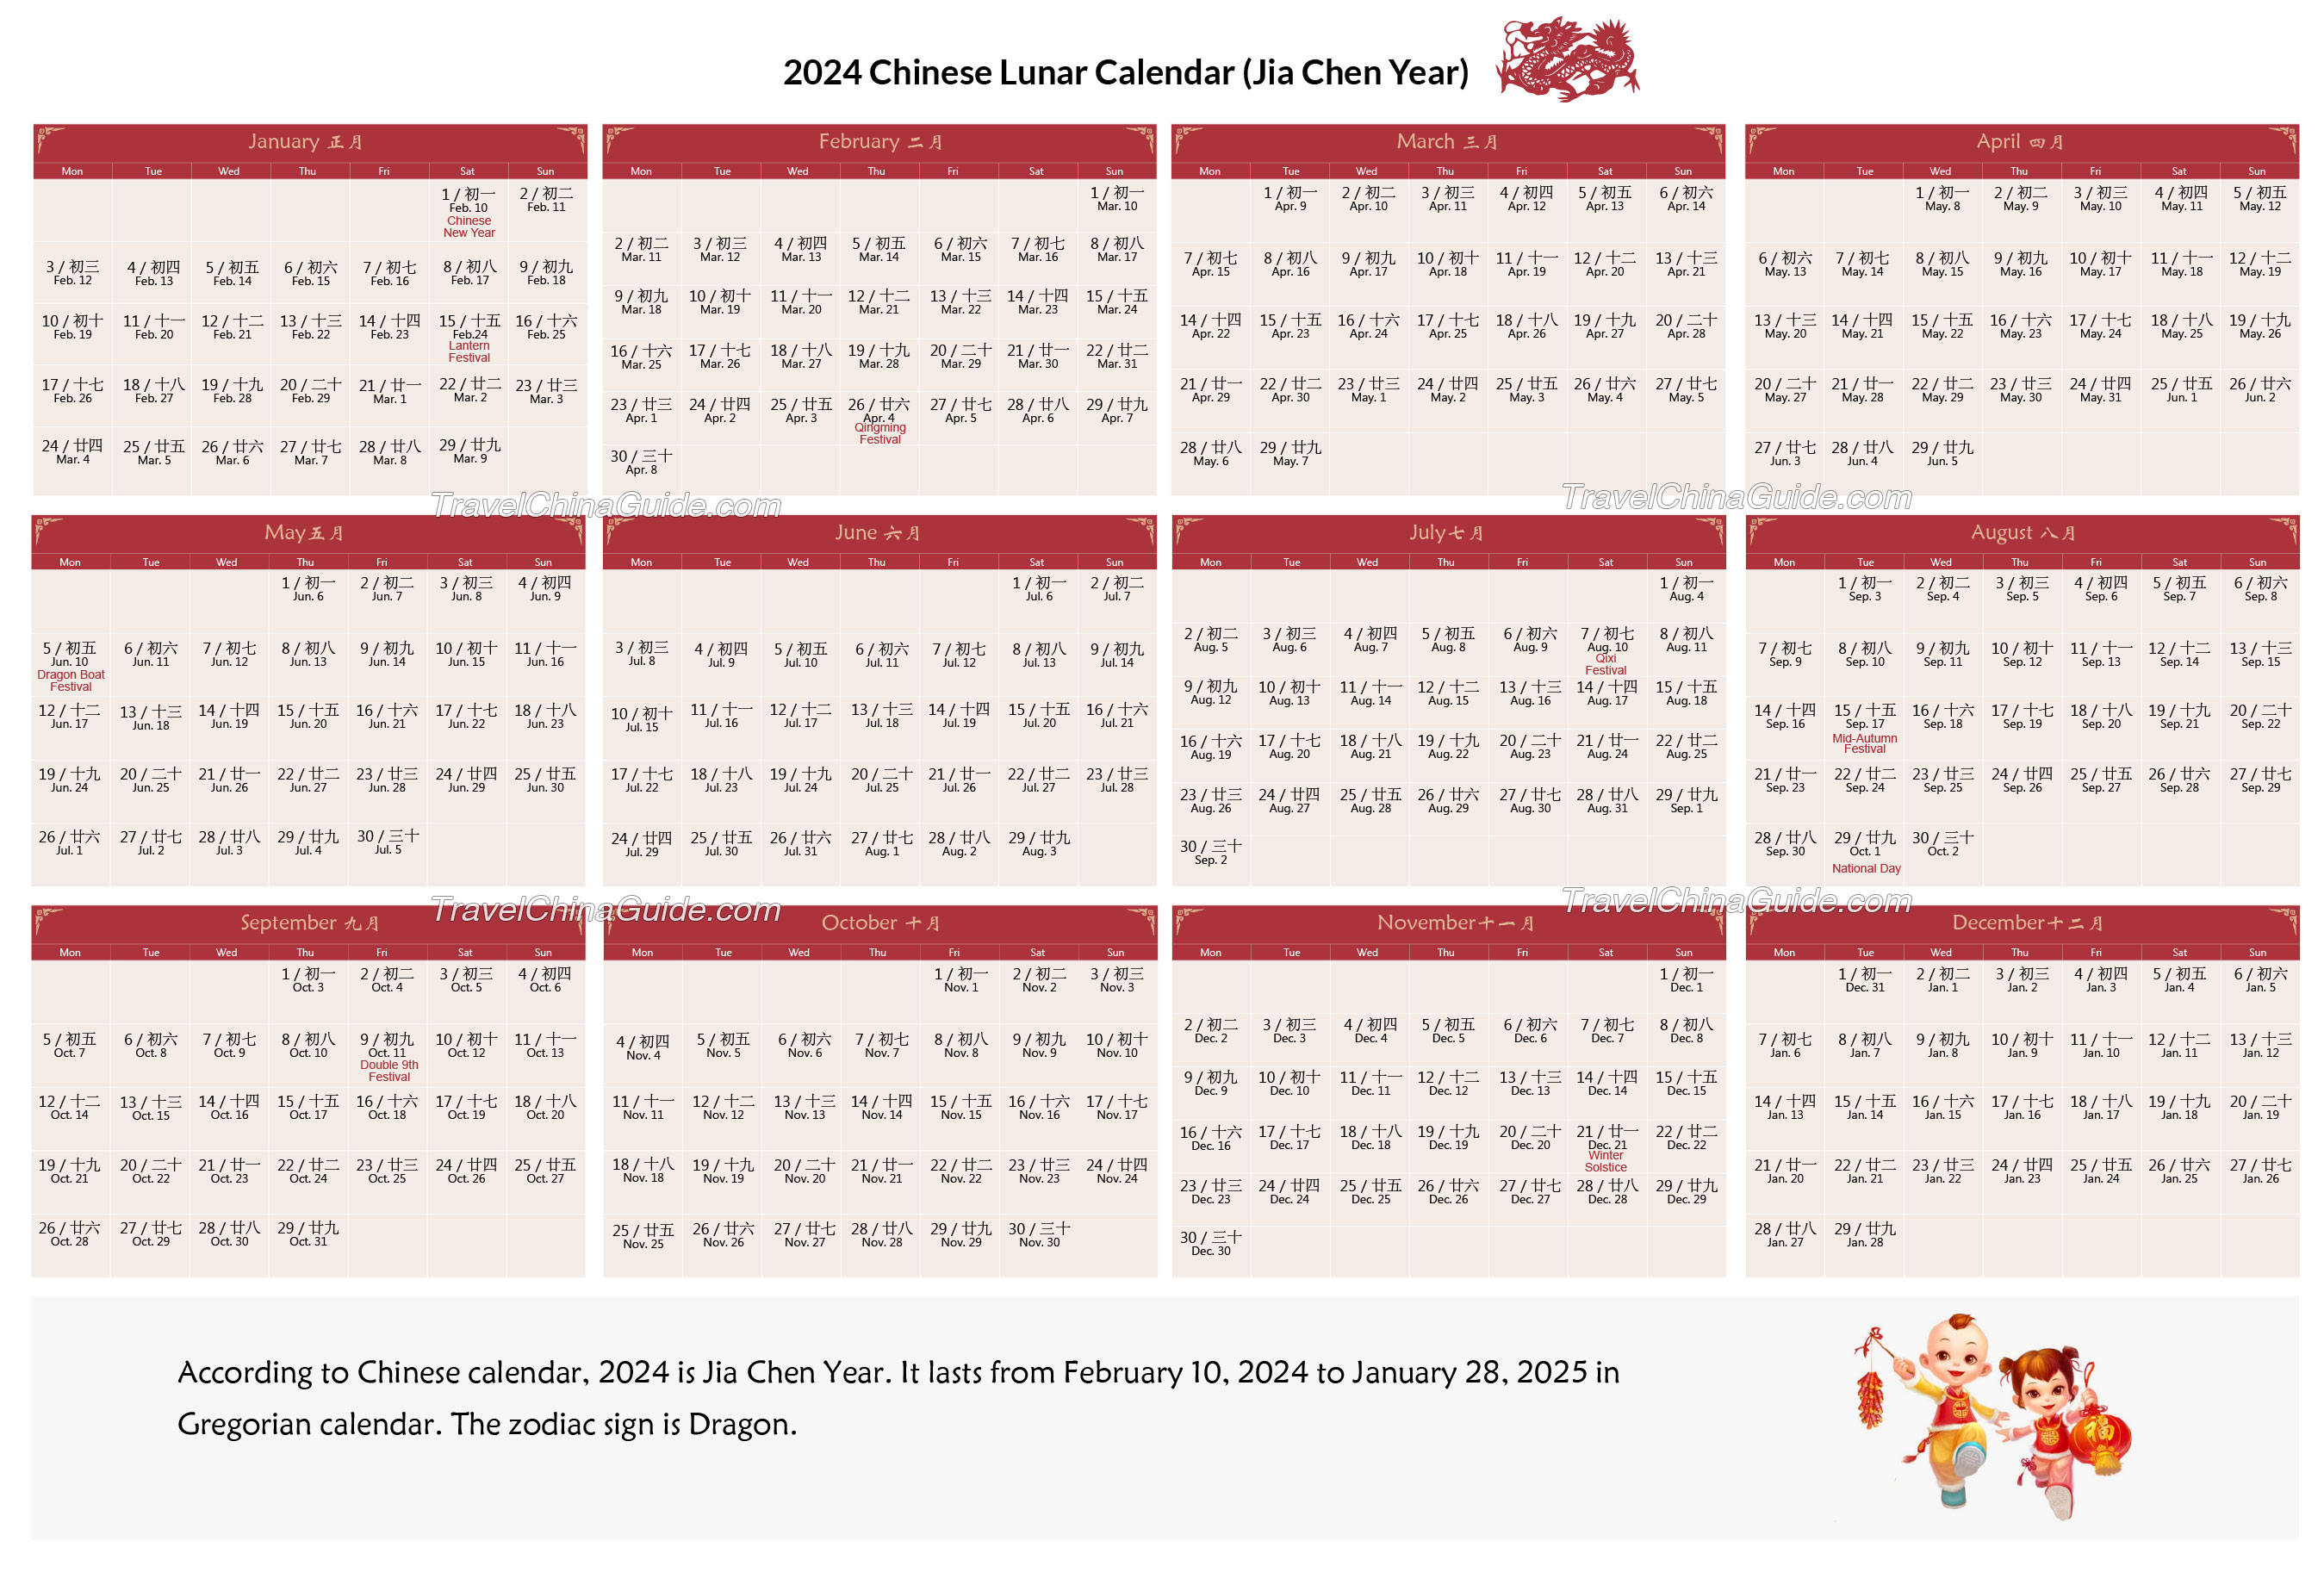 Lunar Calendar Conversion 2022 Chinese Calendar 2022: Gregorian To Lunar Days Converter, Lucky Day